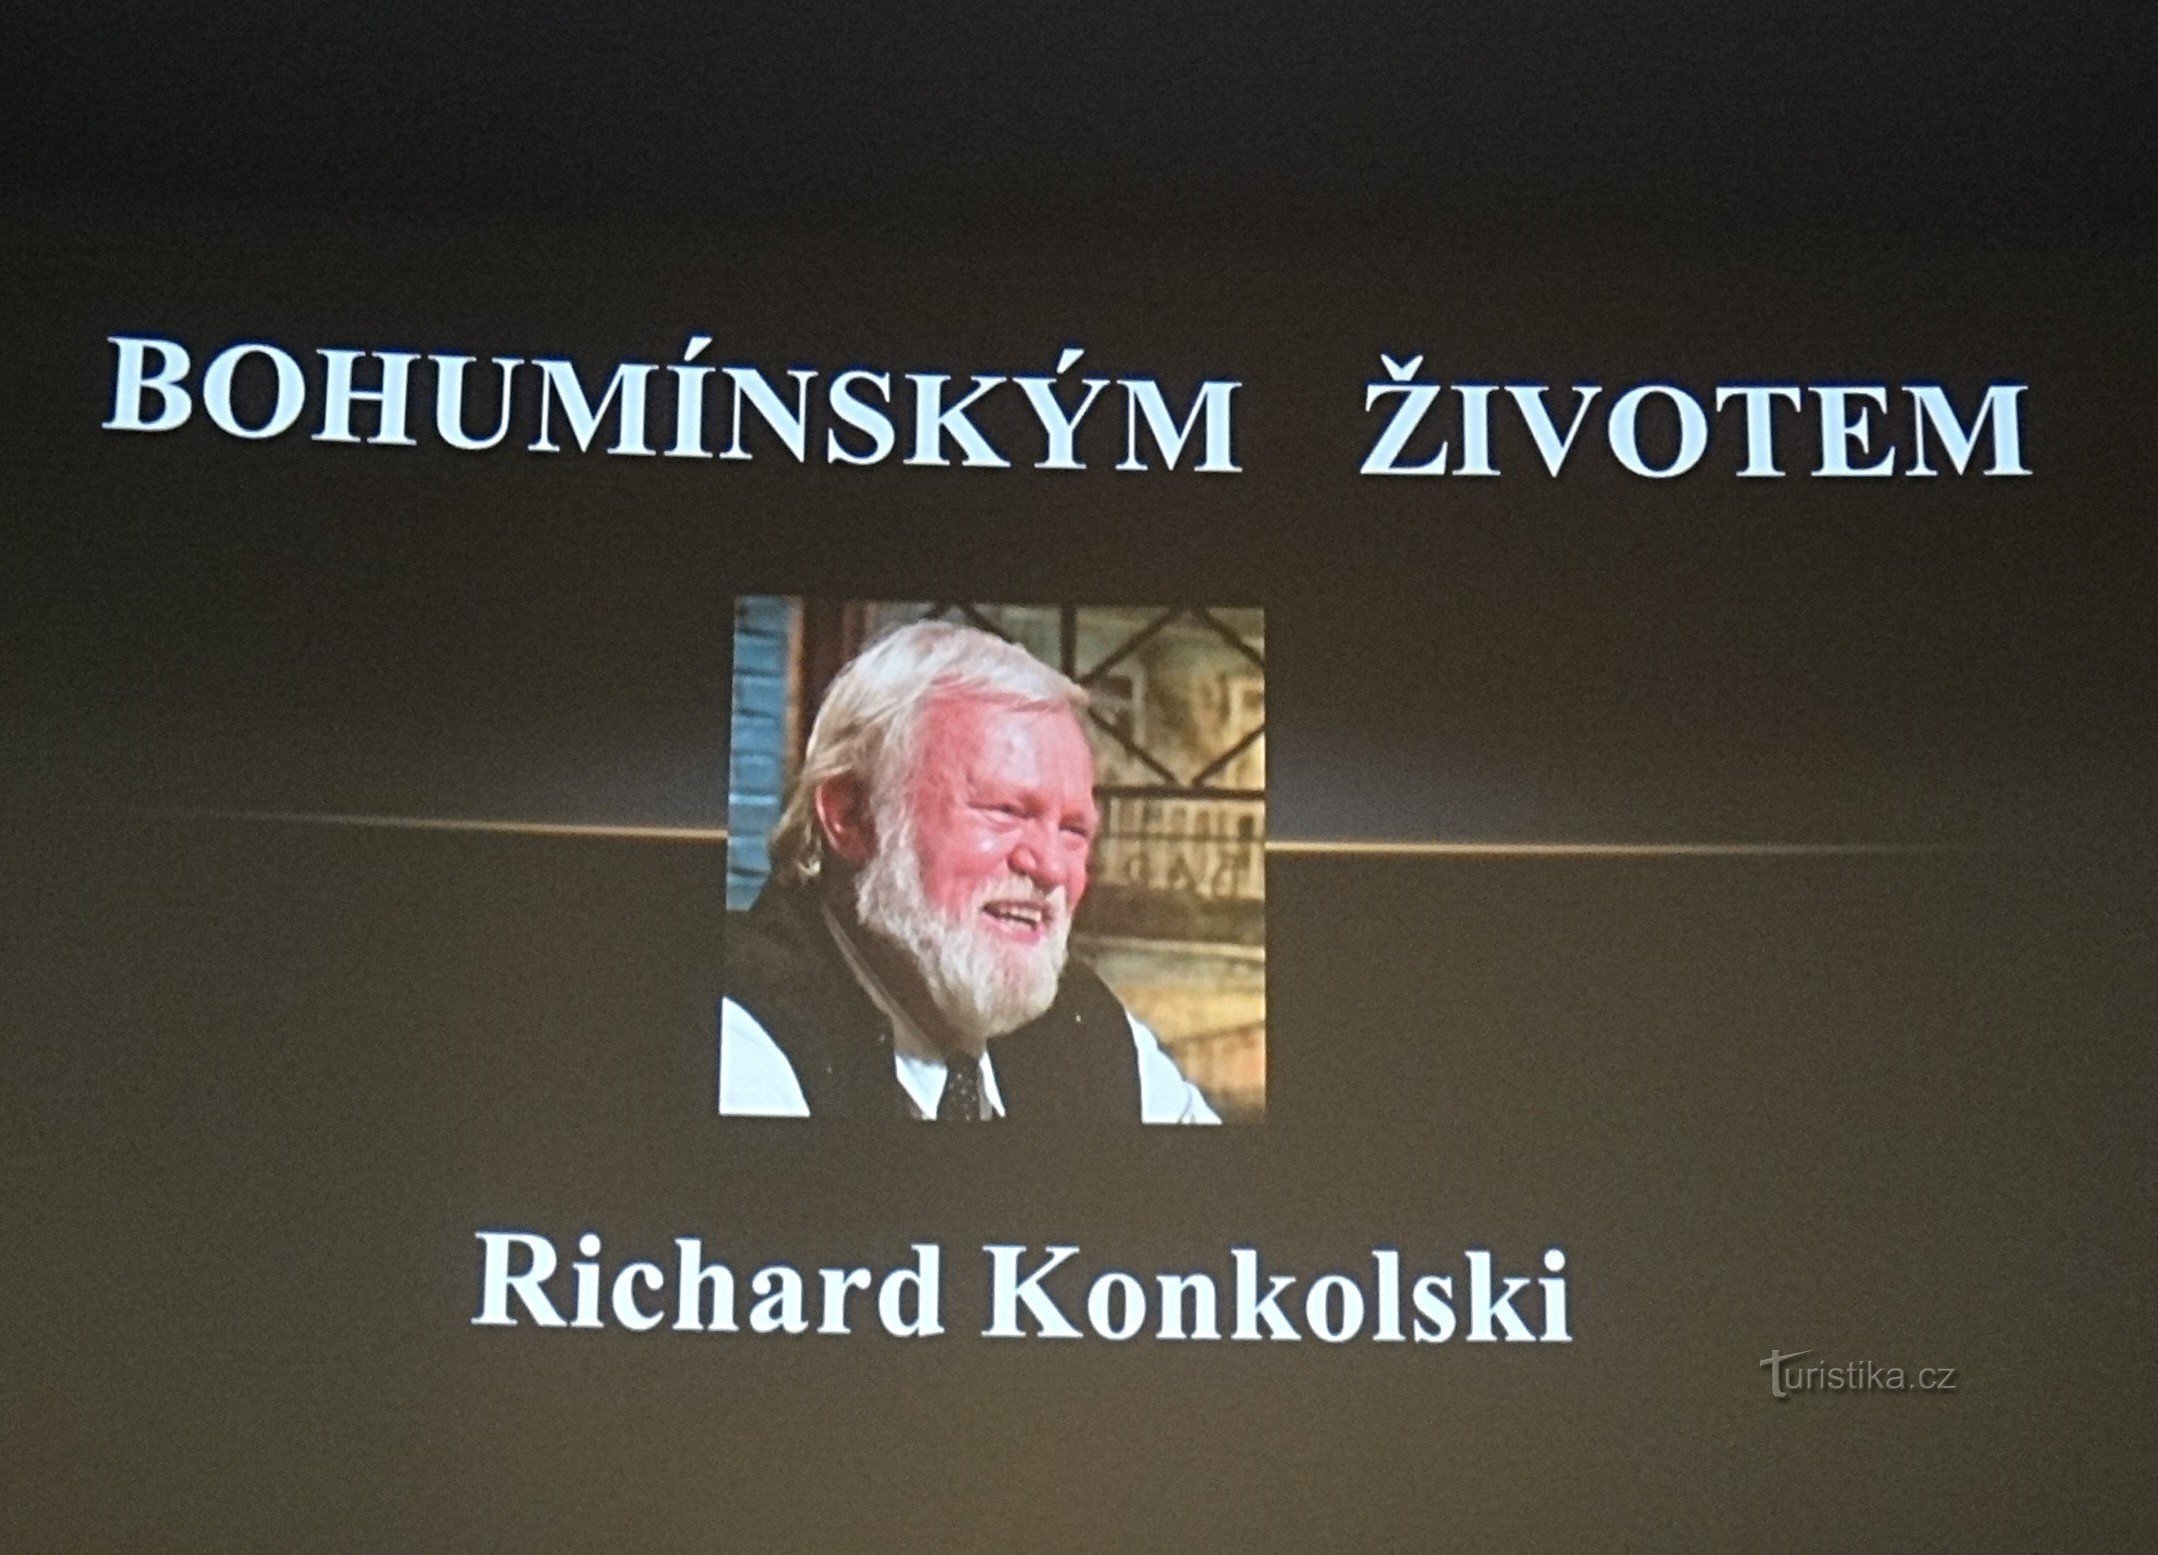 Richard Konkolski fala no cinema